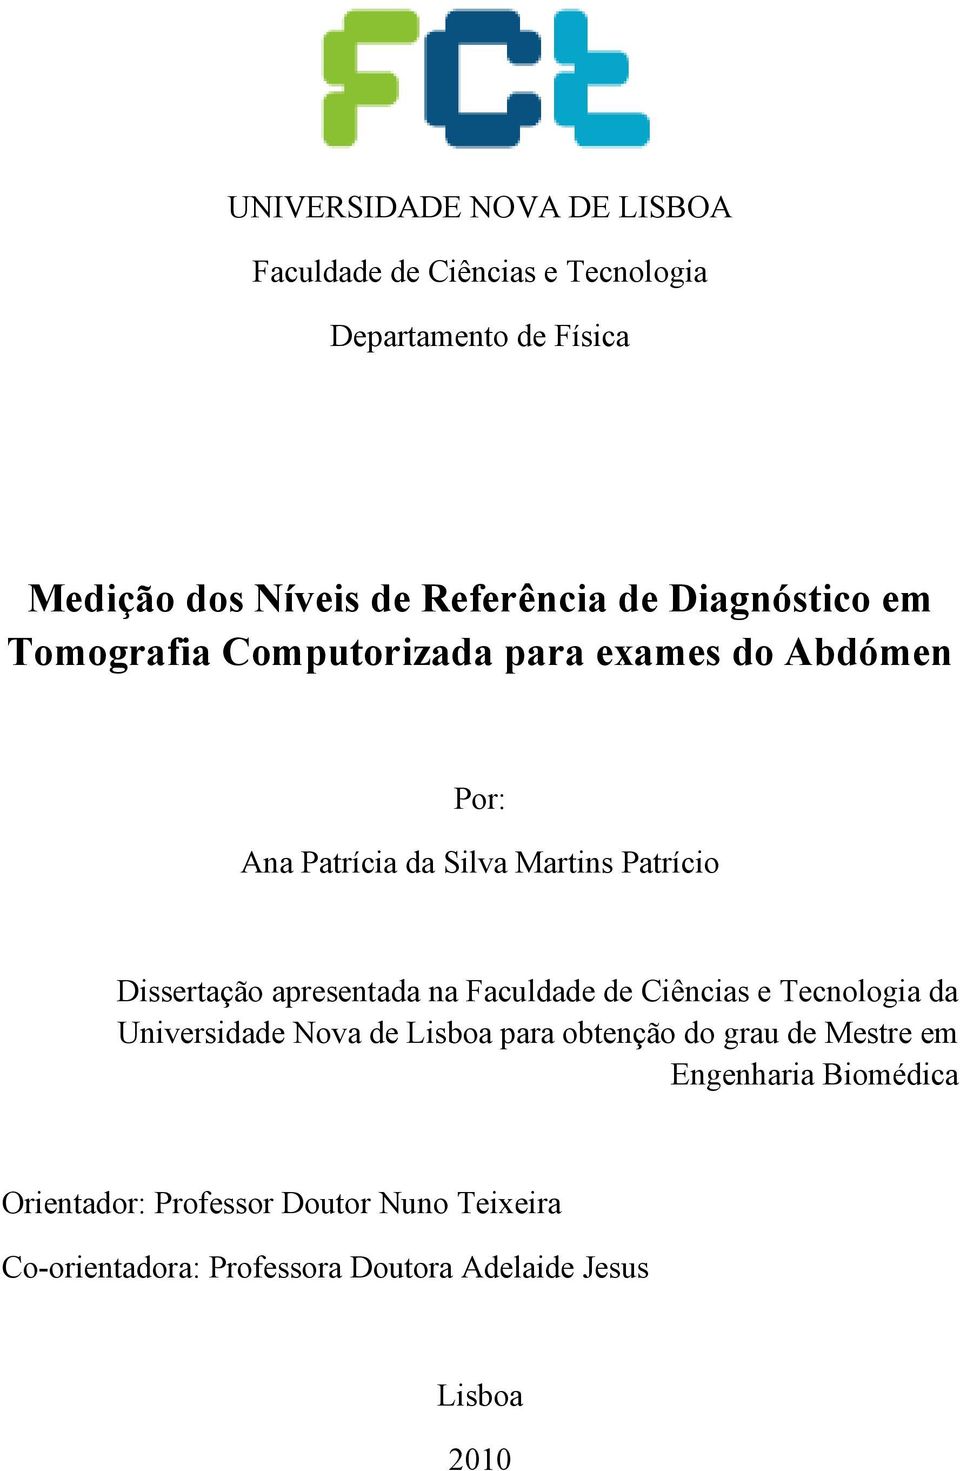 Dissertação apresentada na Faculdade de Ciências e Tecnologia da Universidade Nova de Lisboa para obtenção do grau de